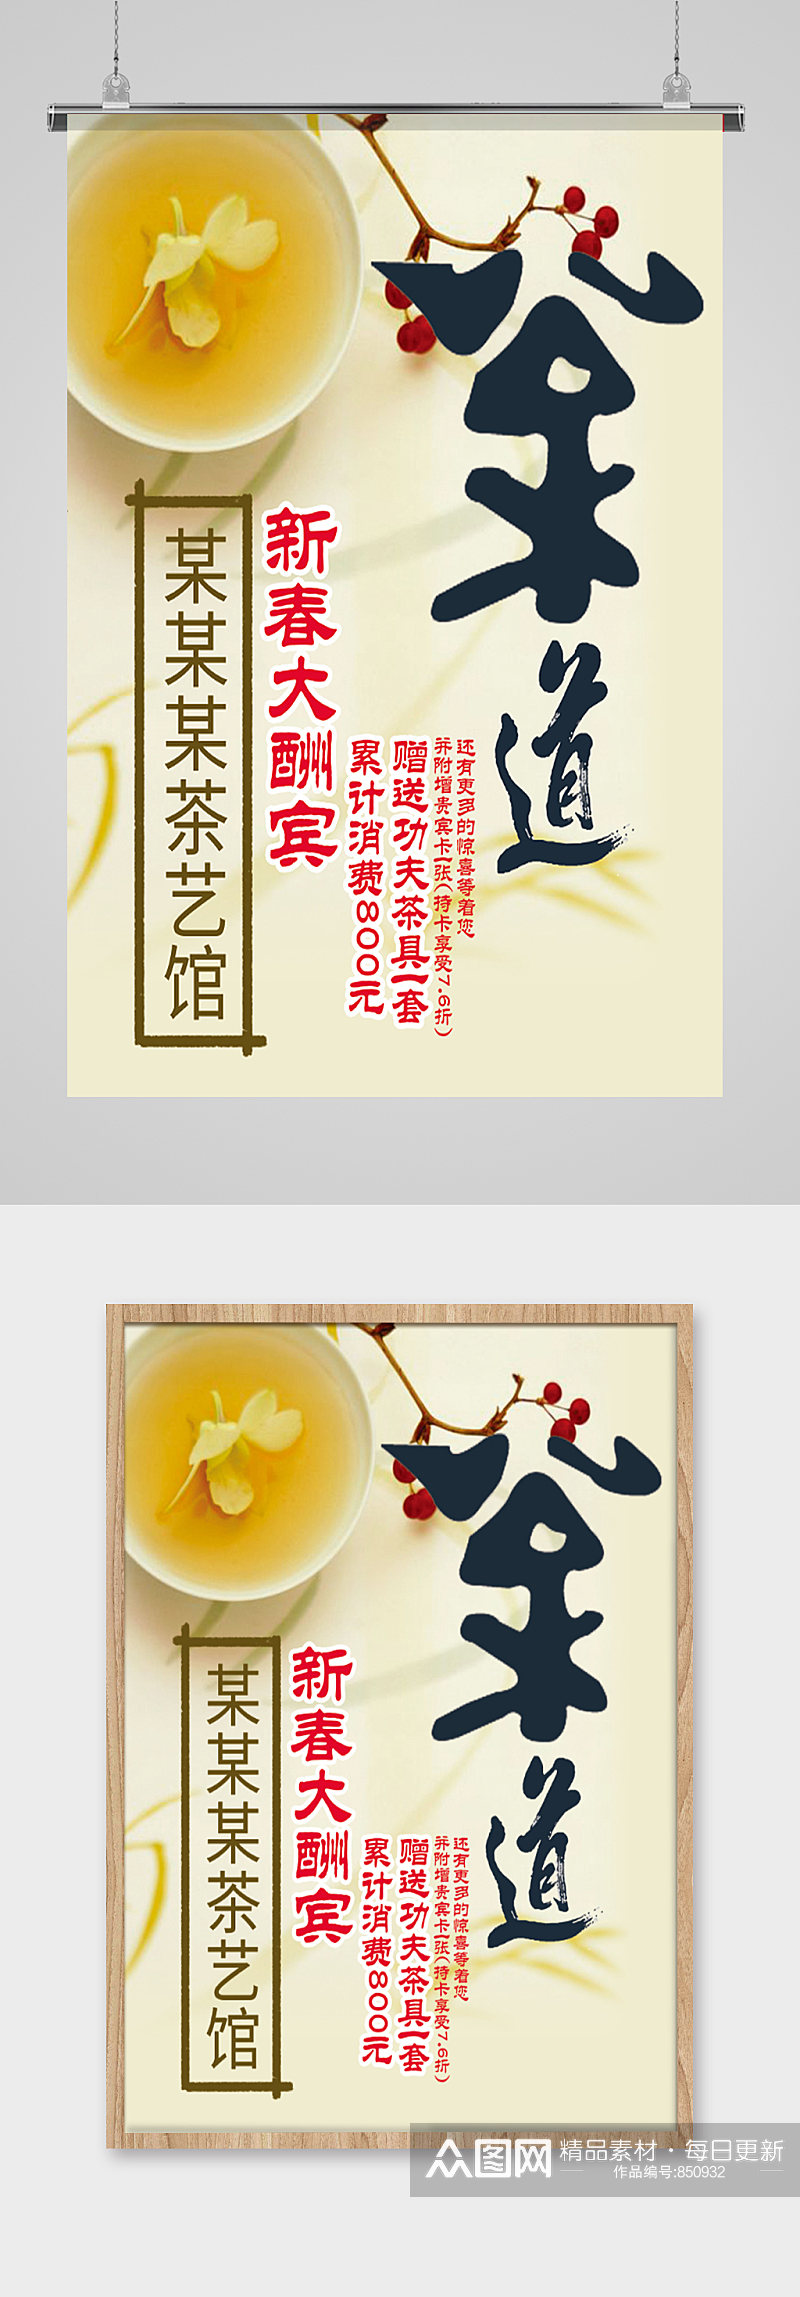 茶庄开业宣传海报设计素材